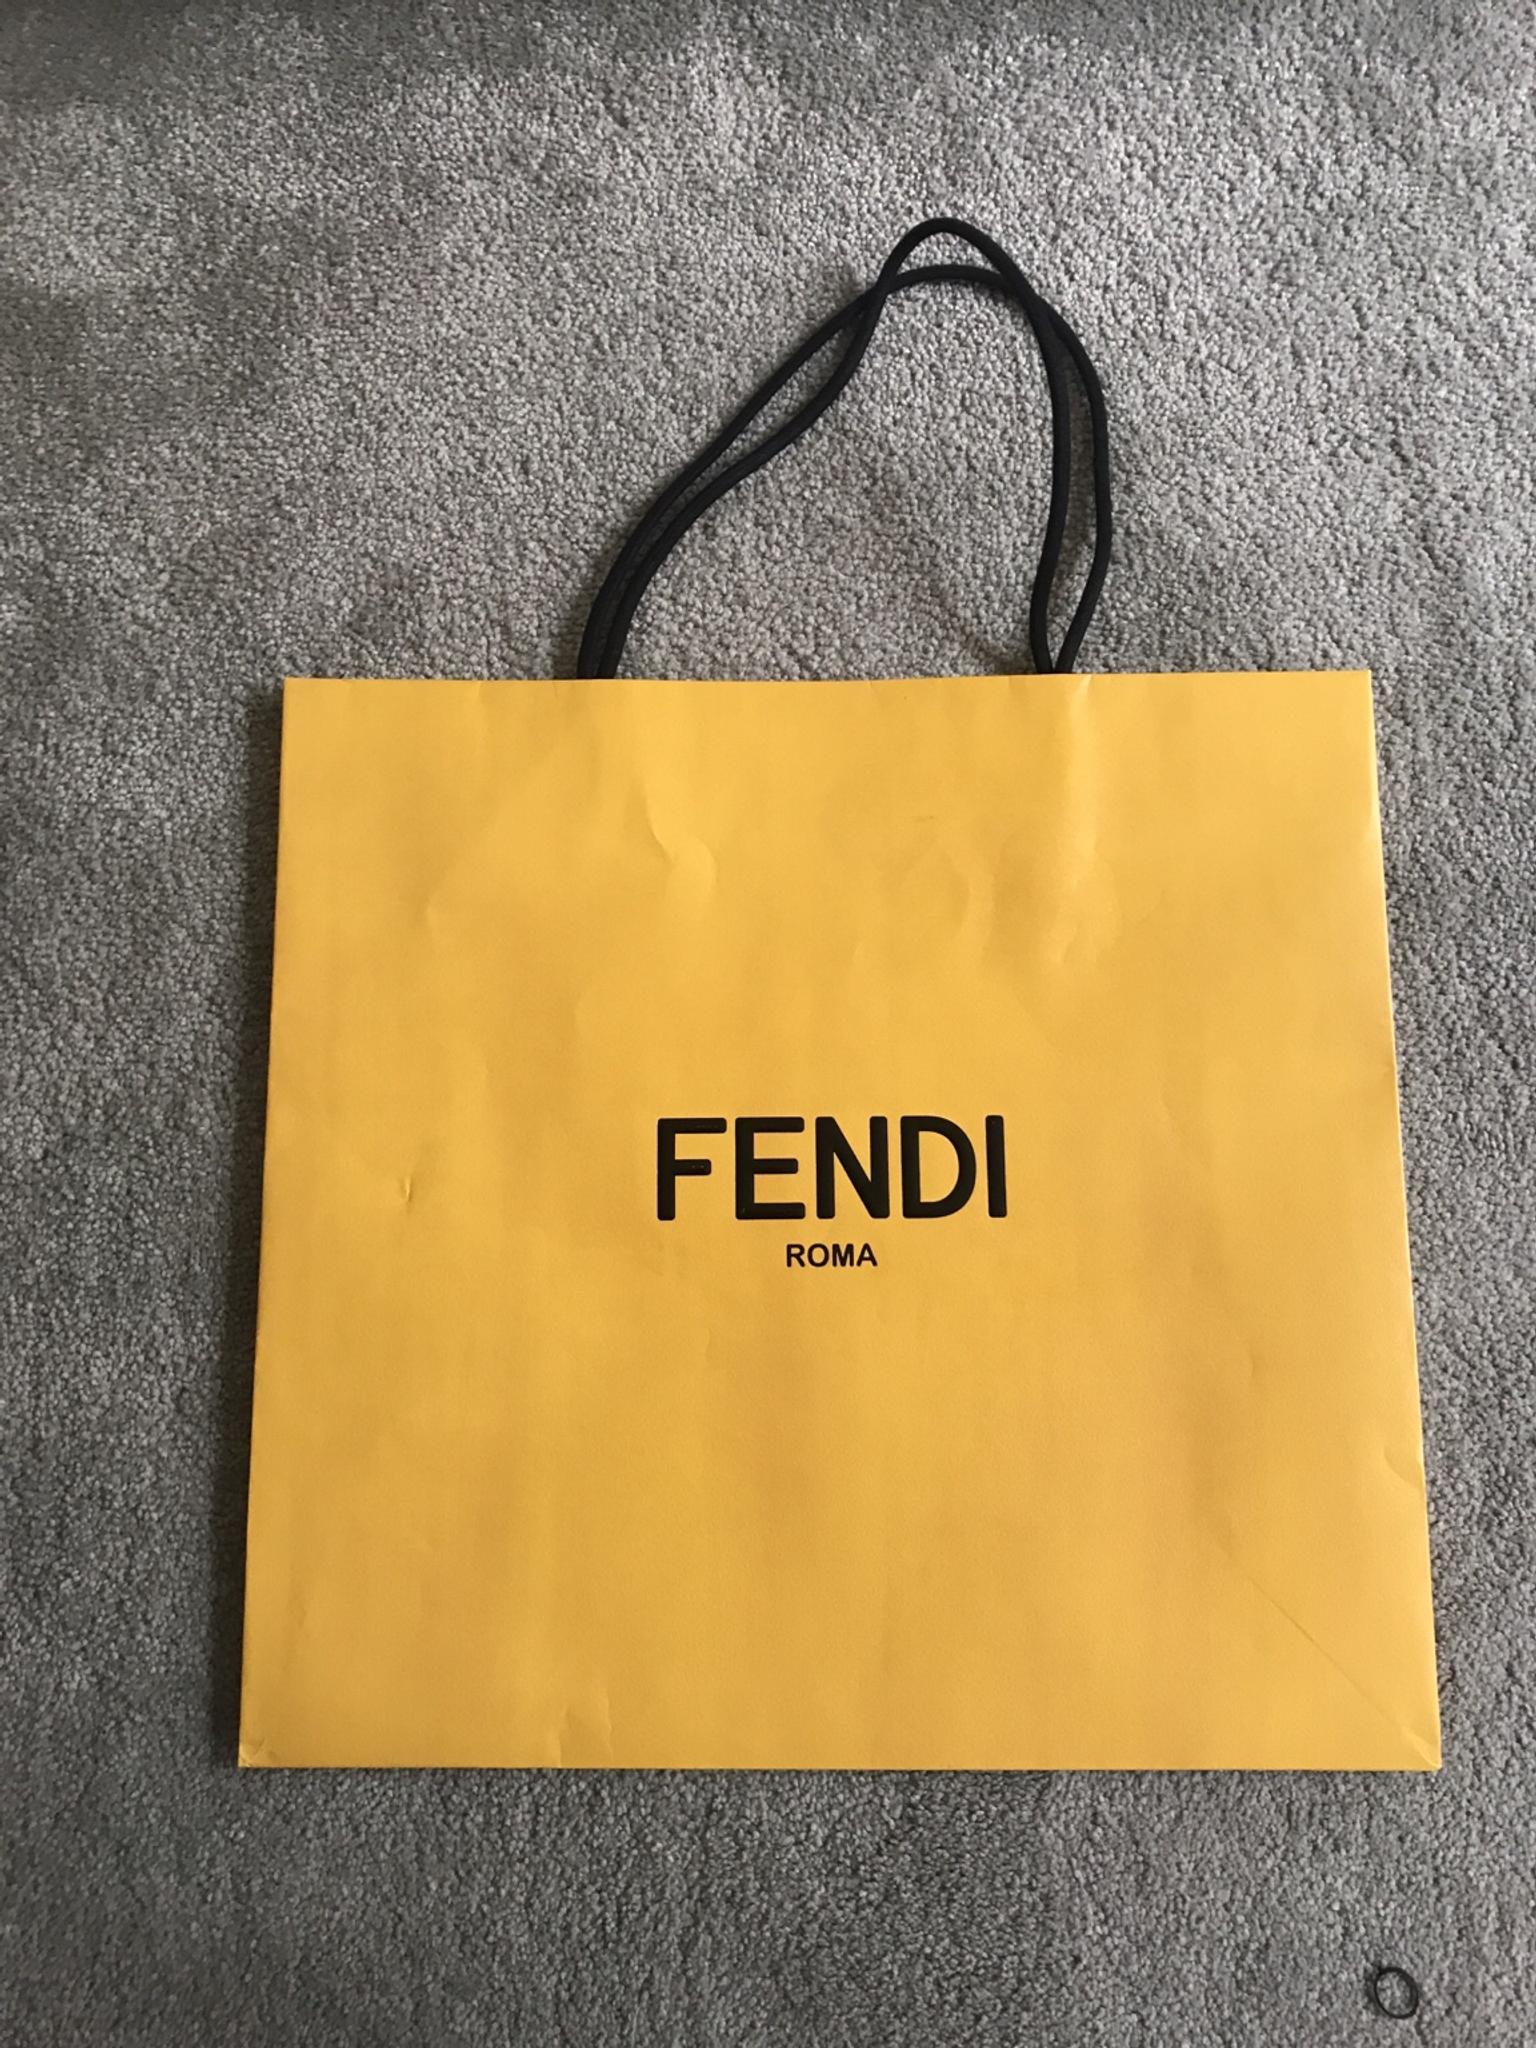 FENDI paper bag in SW5 Royal Borough of 